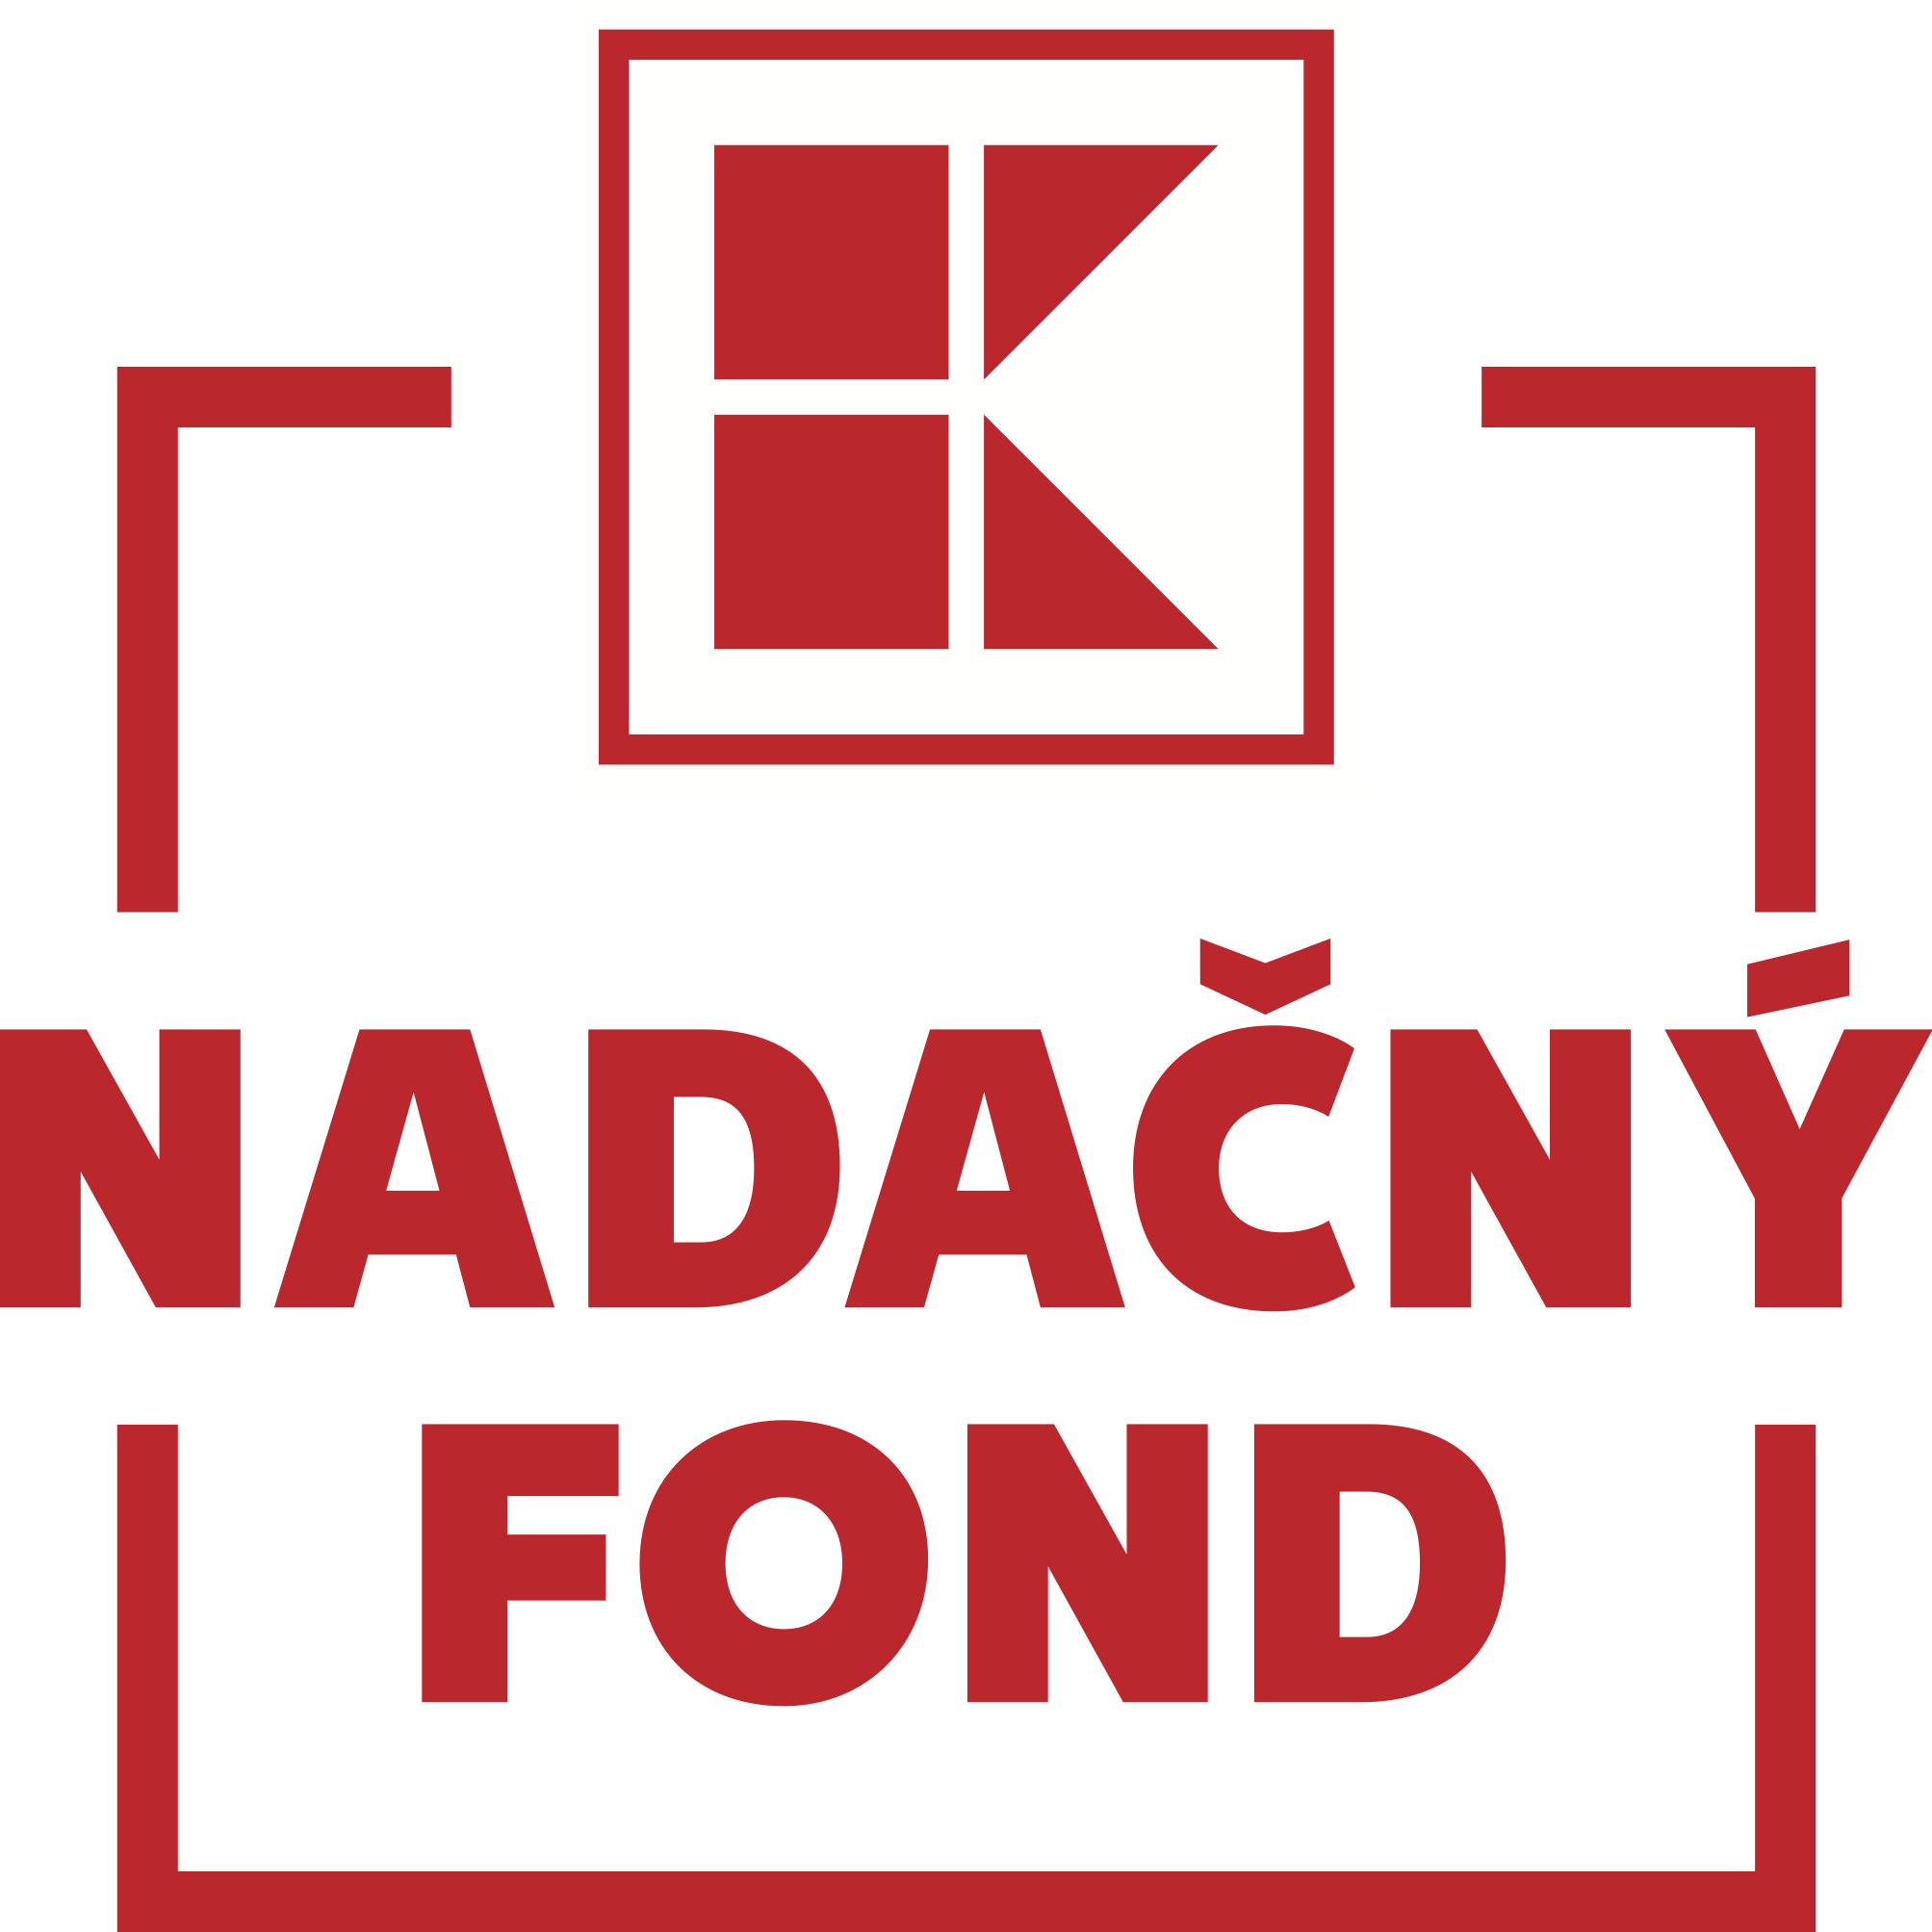 4 KL Nadacny fond Logo CMYK